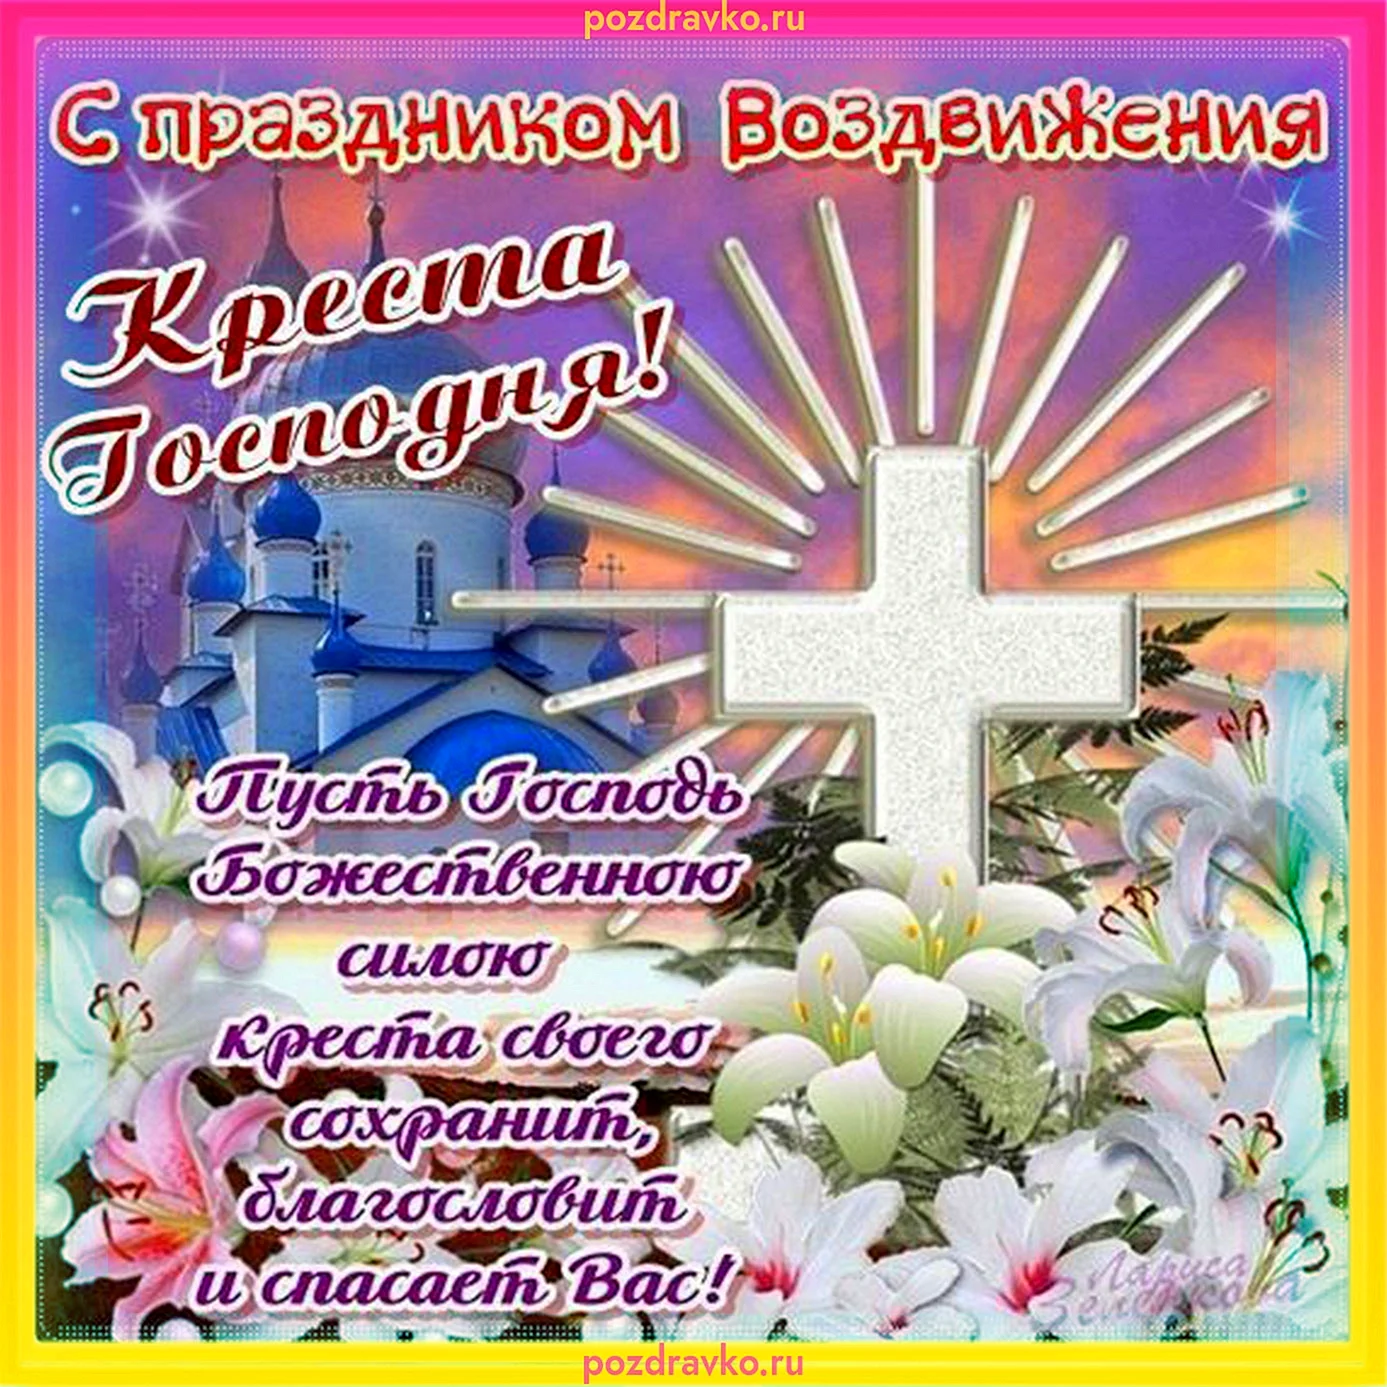 27 Сентября праздник Воздвижения Креста Господня